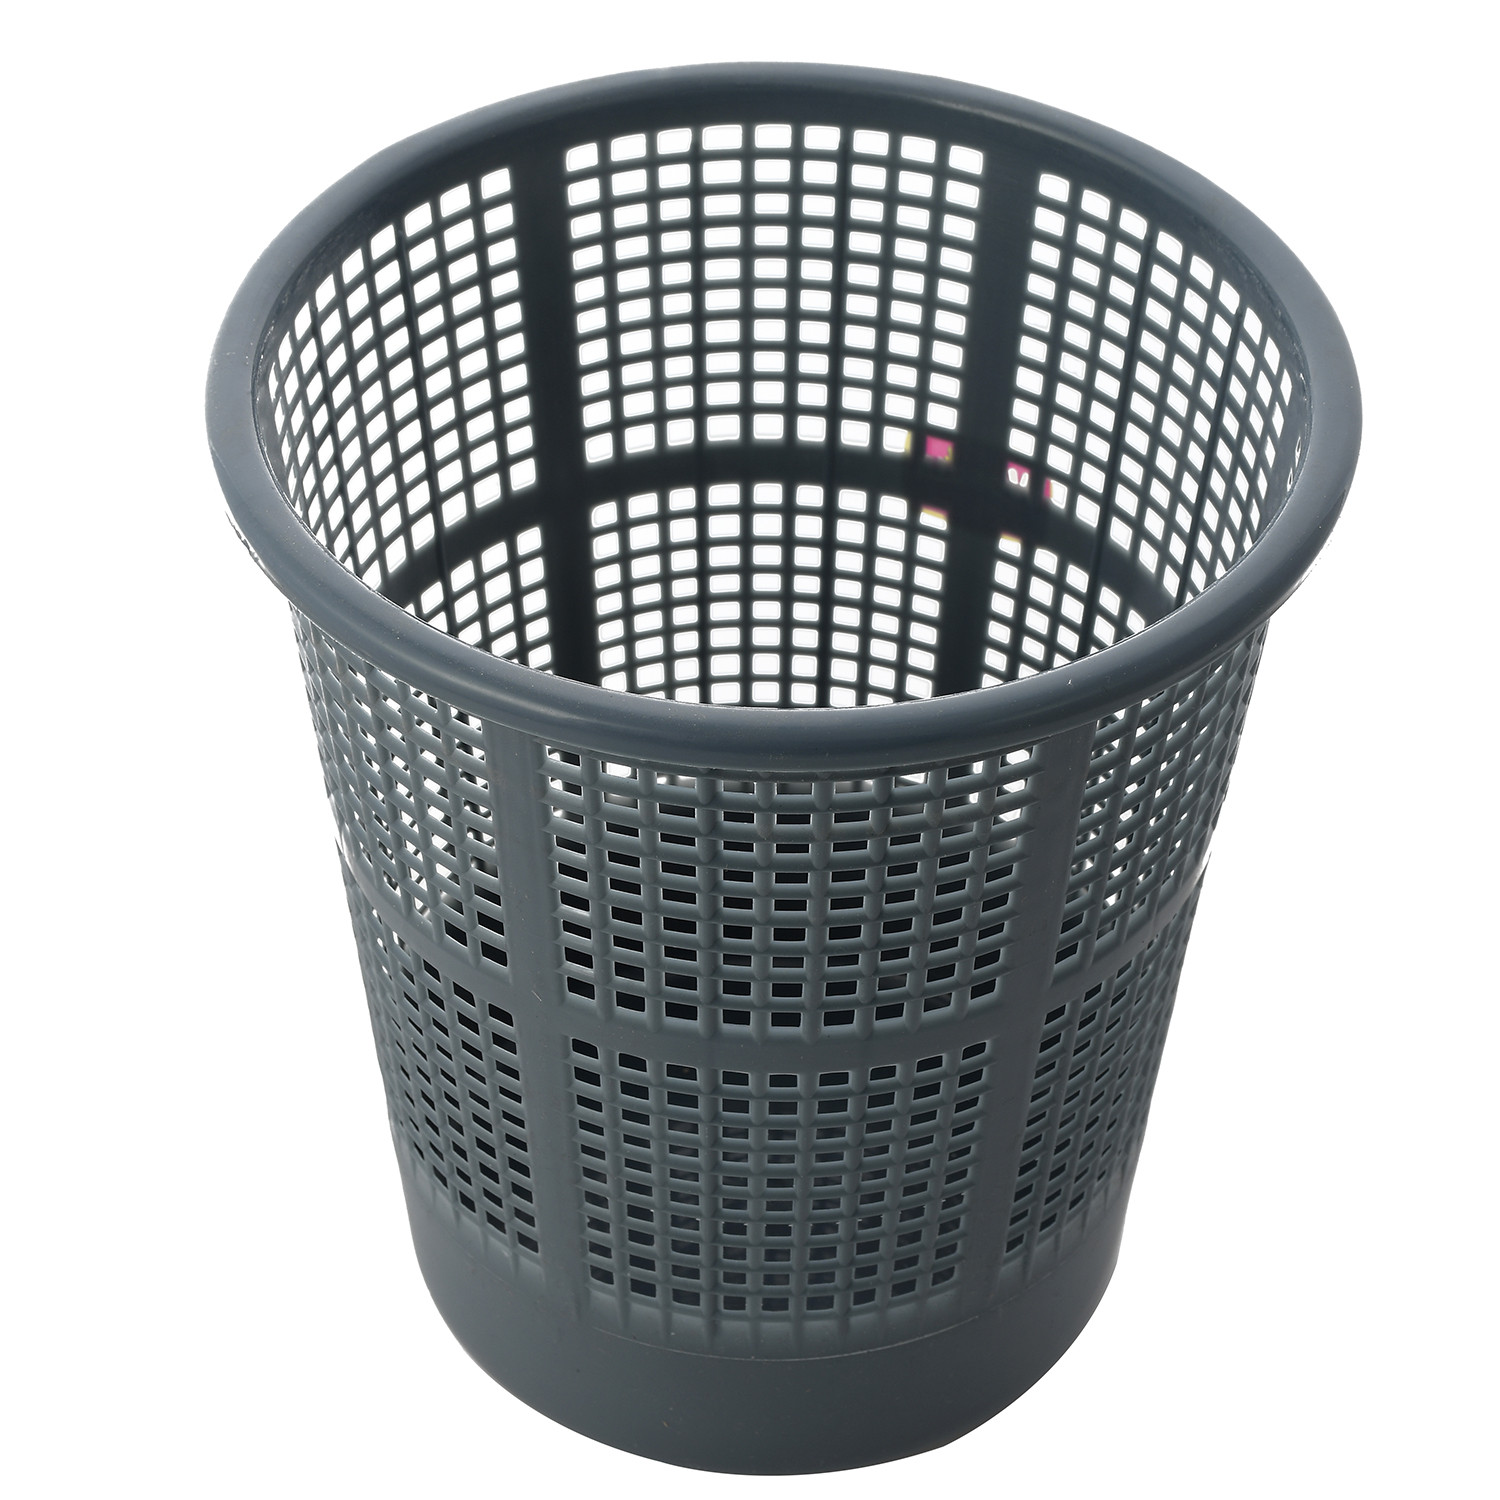 Kuber Industries Plastic Mesh Dustbin Garbage Bin for Office use, School, Bedroom,Kids Room, Home, Multi Purpose,5 Liters (Brown & Grey)